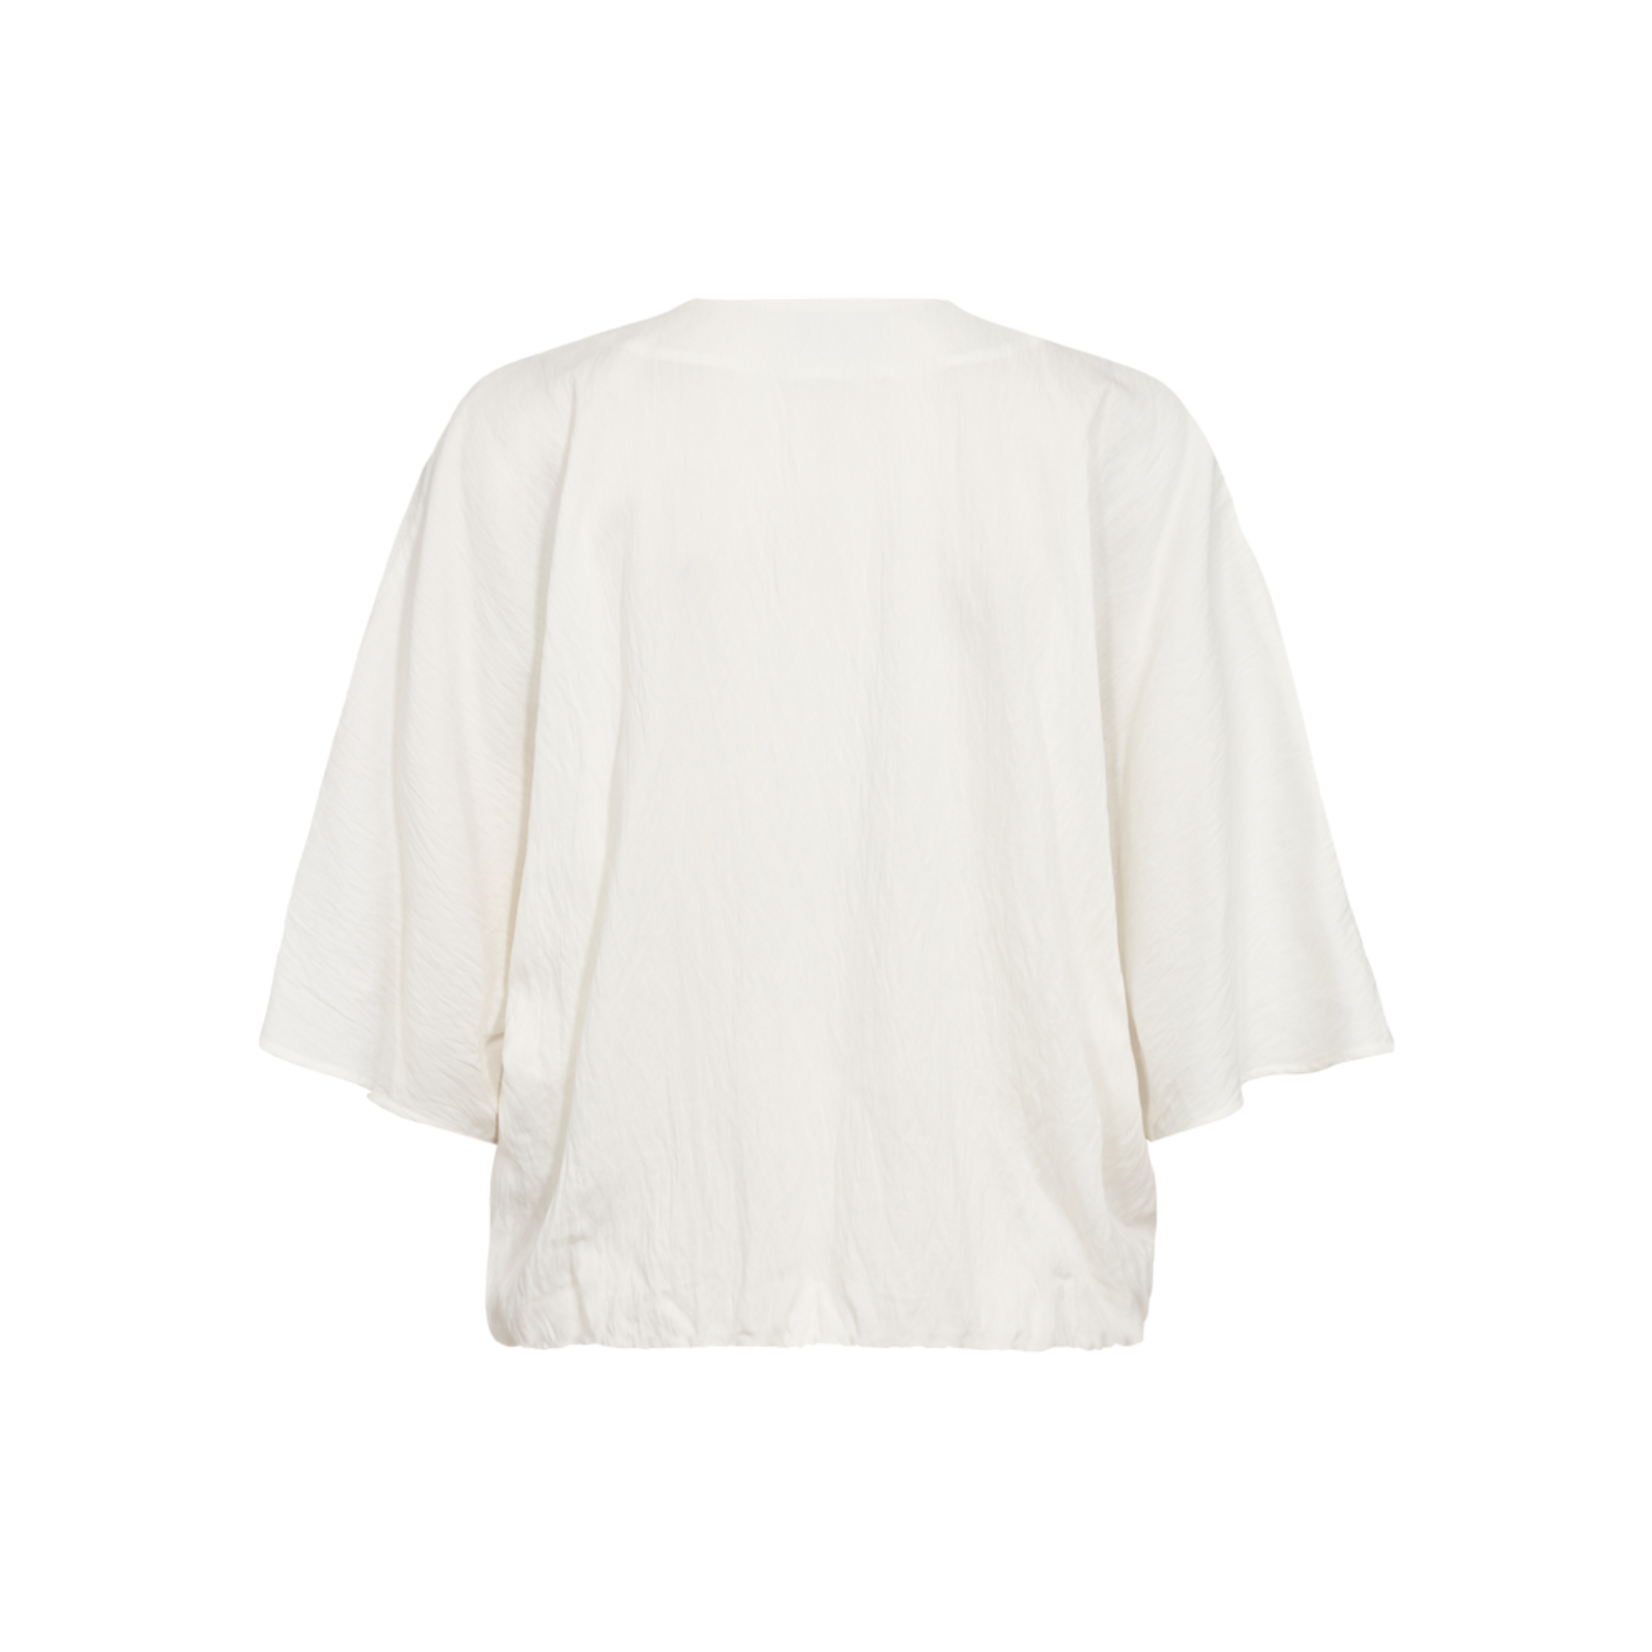 Free/quent Leuke witte blouse, met toffe mouwen en snit